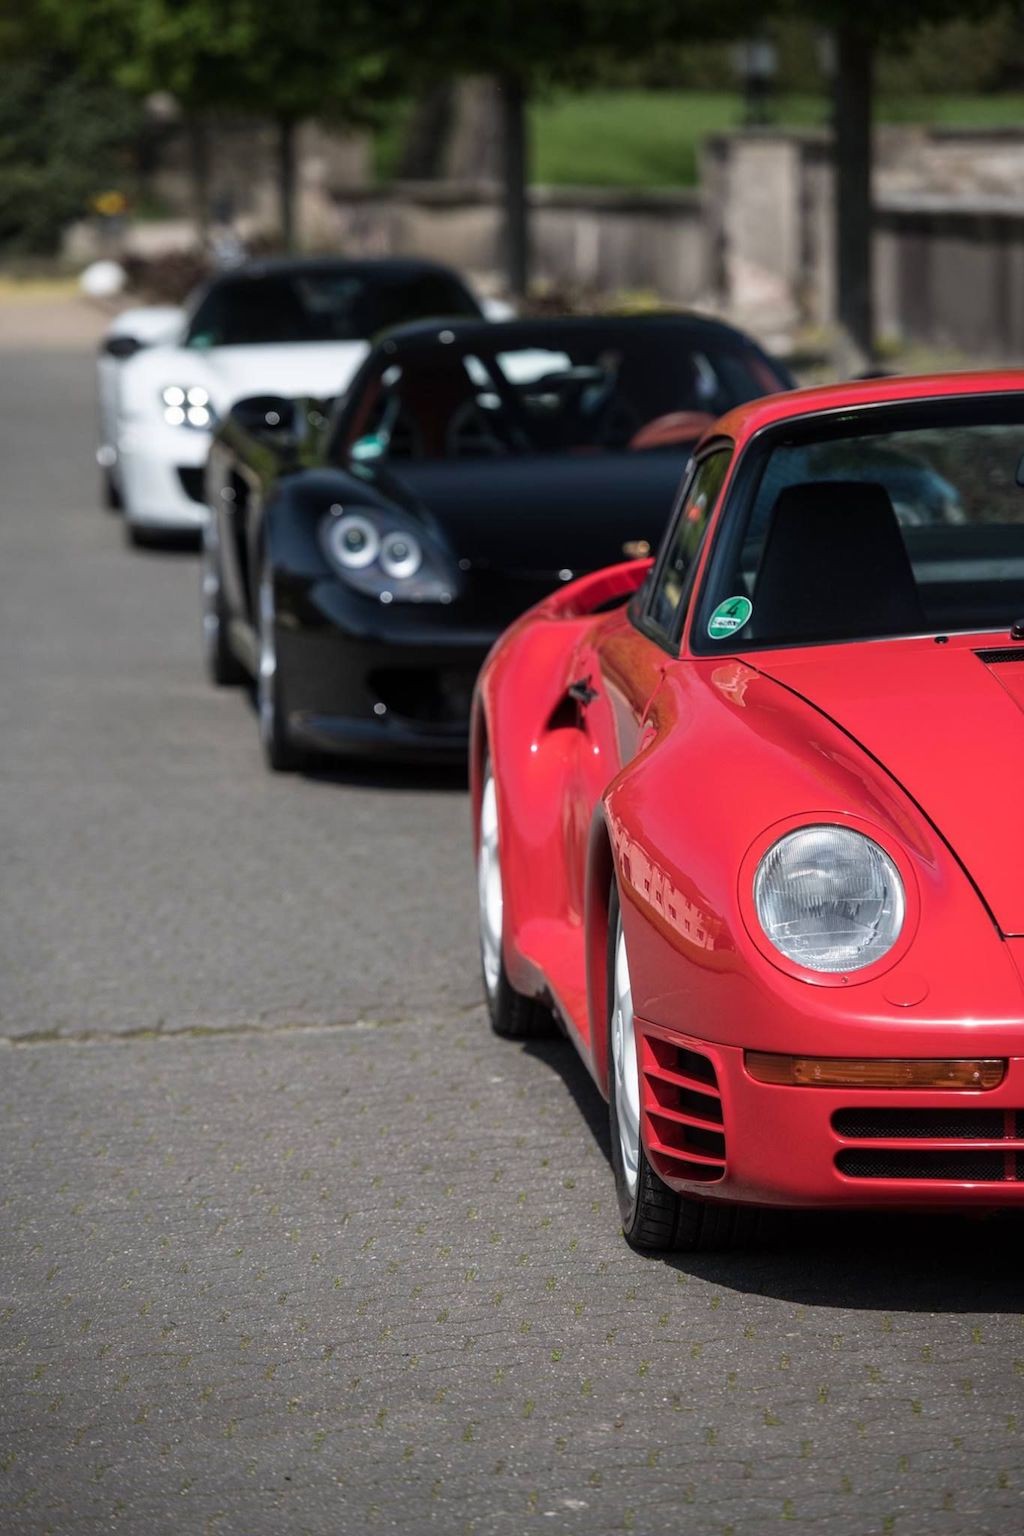 Xem 3 thế hệ hypercar nhà Porsche “so dáng” cùng nhau ảnh 7